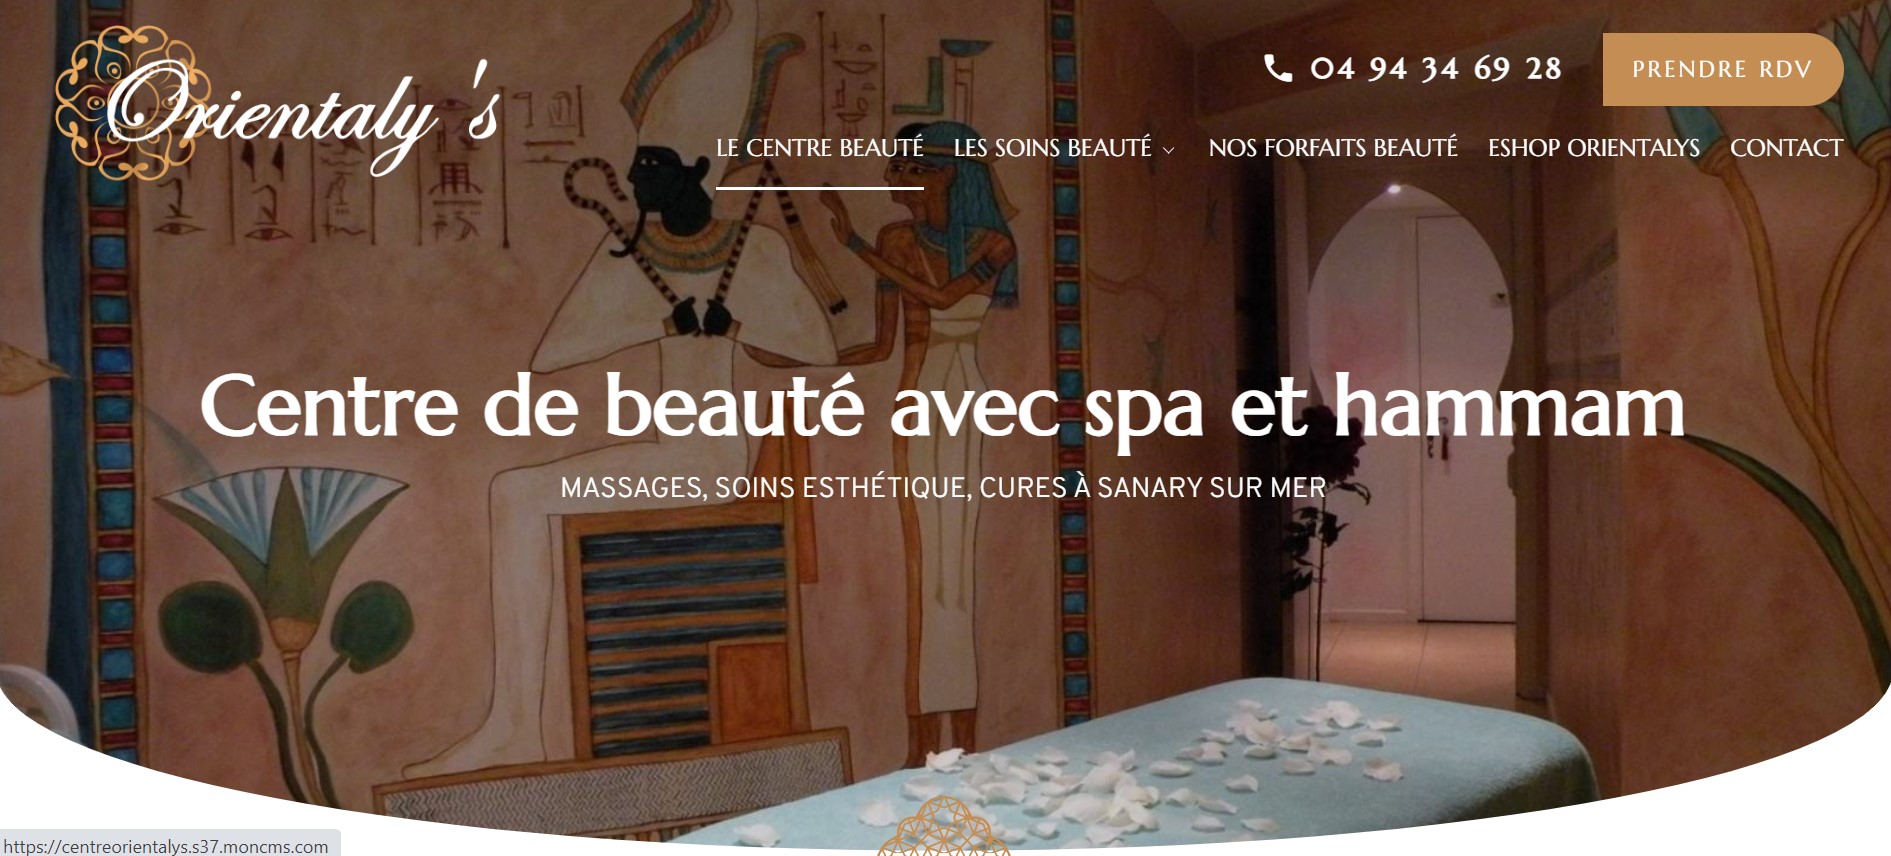 Centre Orientaly's, institut de beauté avec hammam marocain à Sanary-sur-MEr